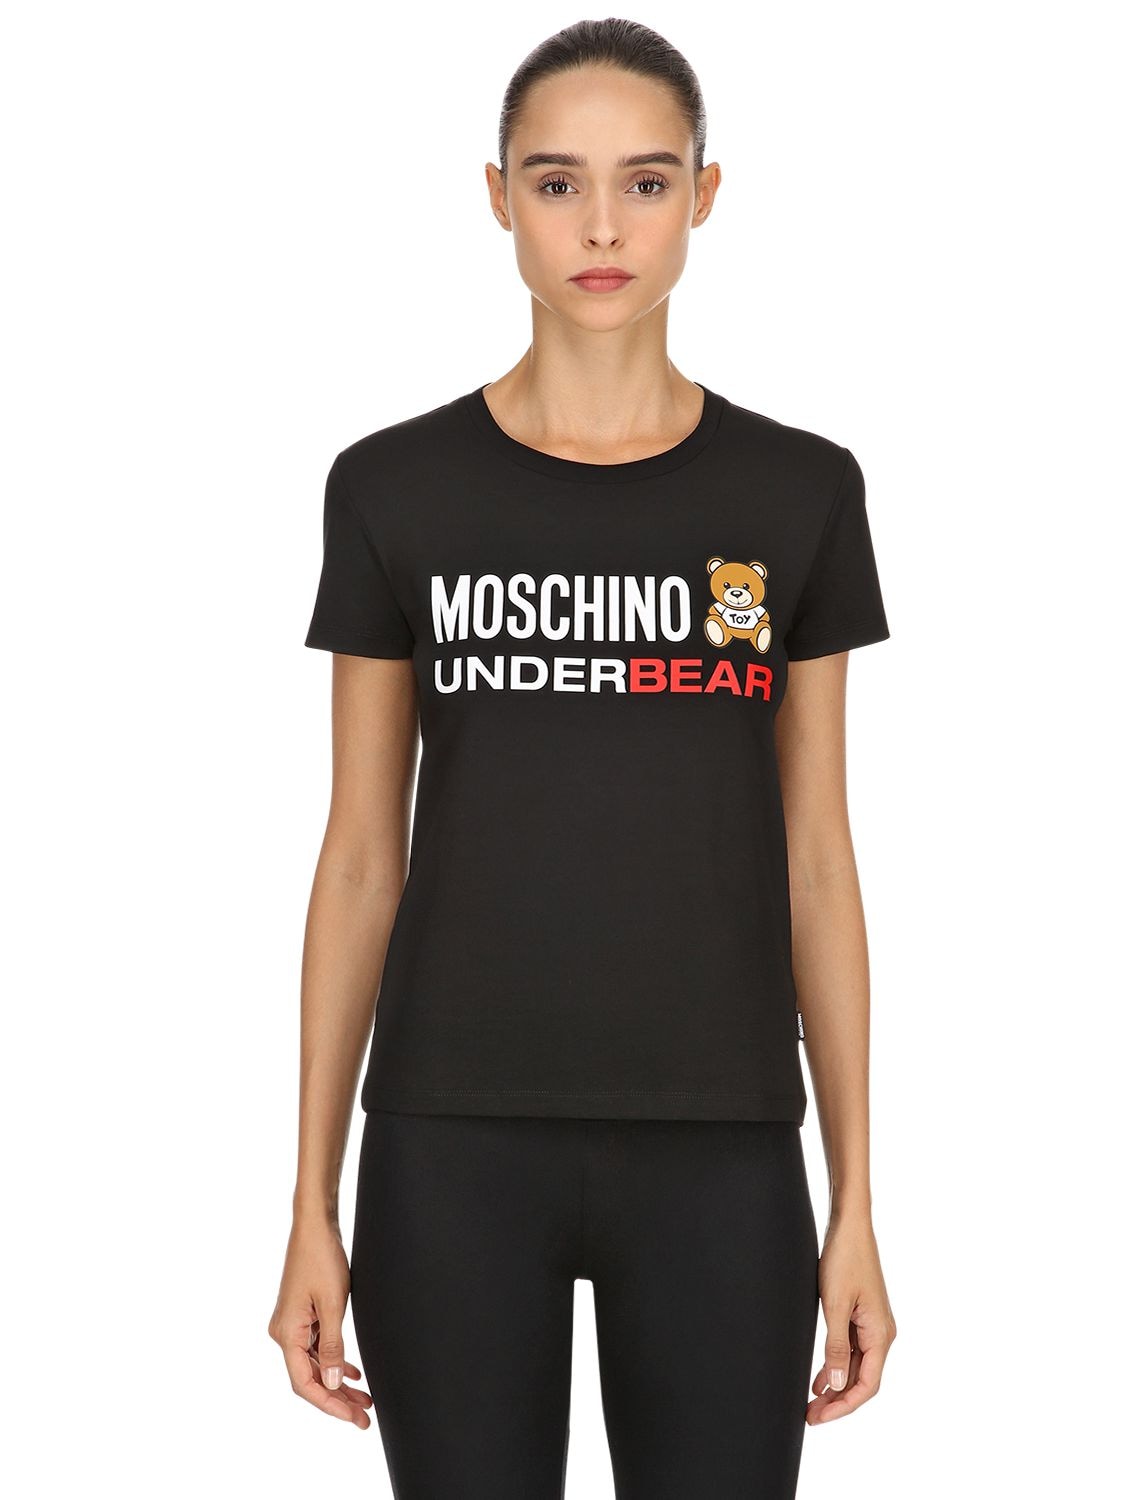 Moschino Underwear Underbear Cotton Jersey T-shirt In Black